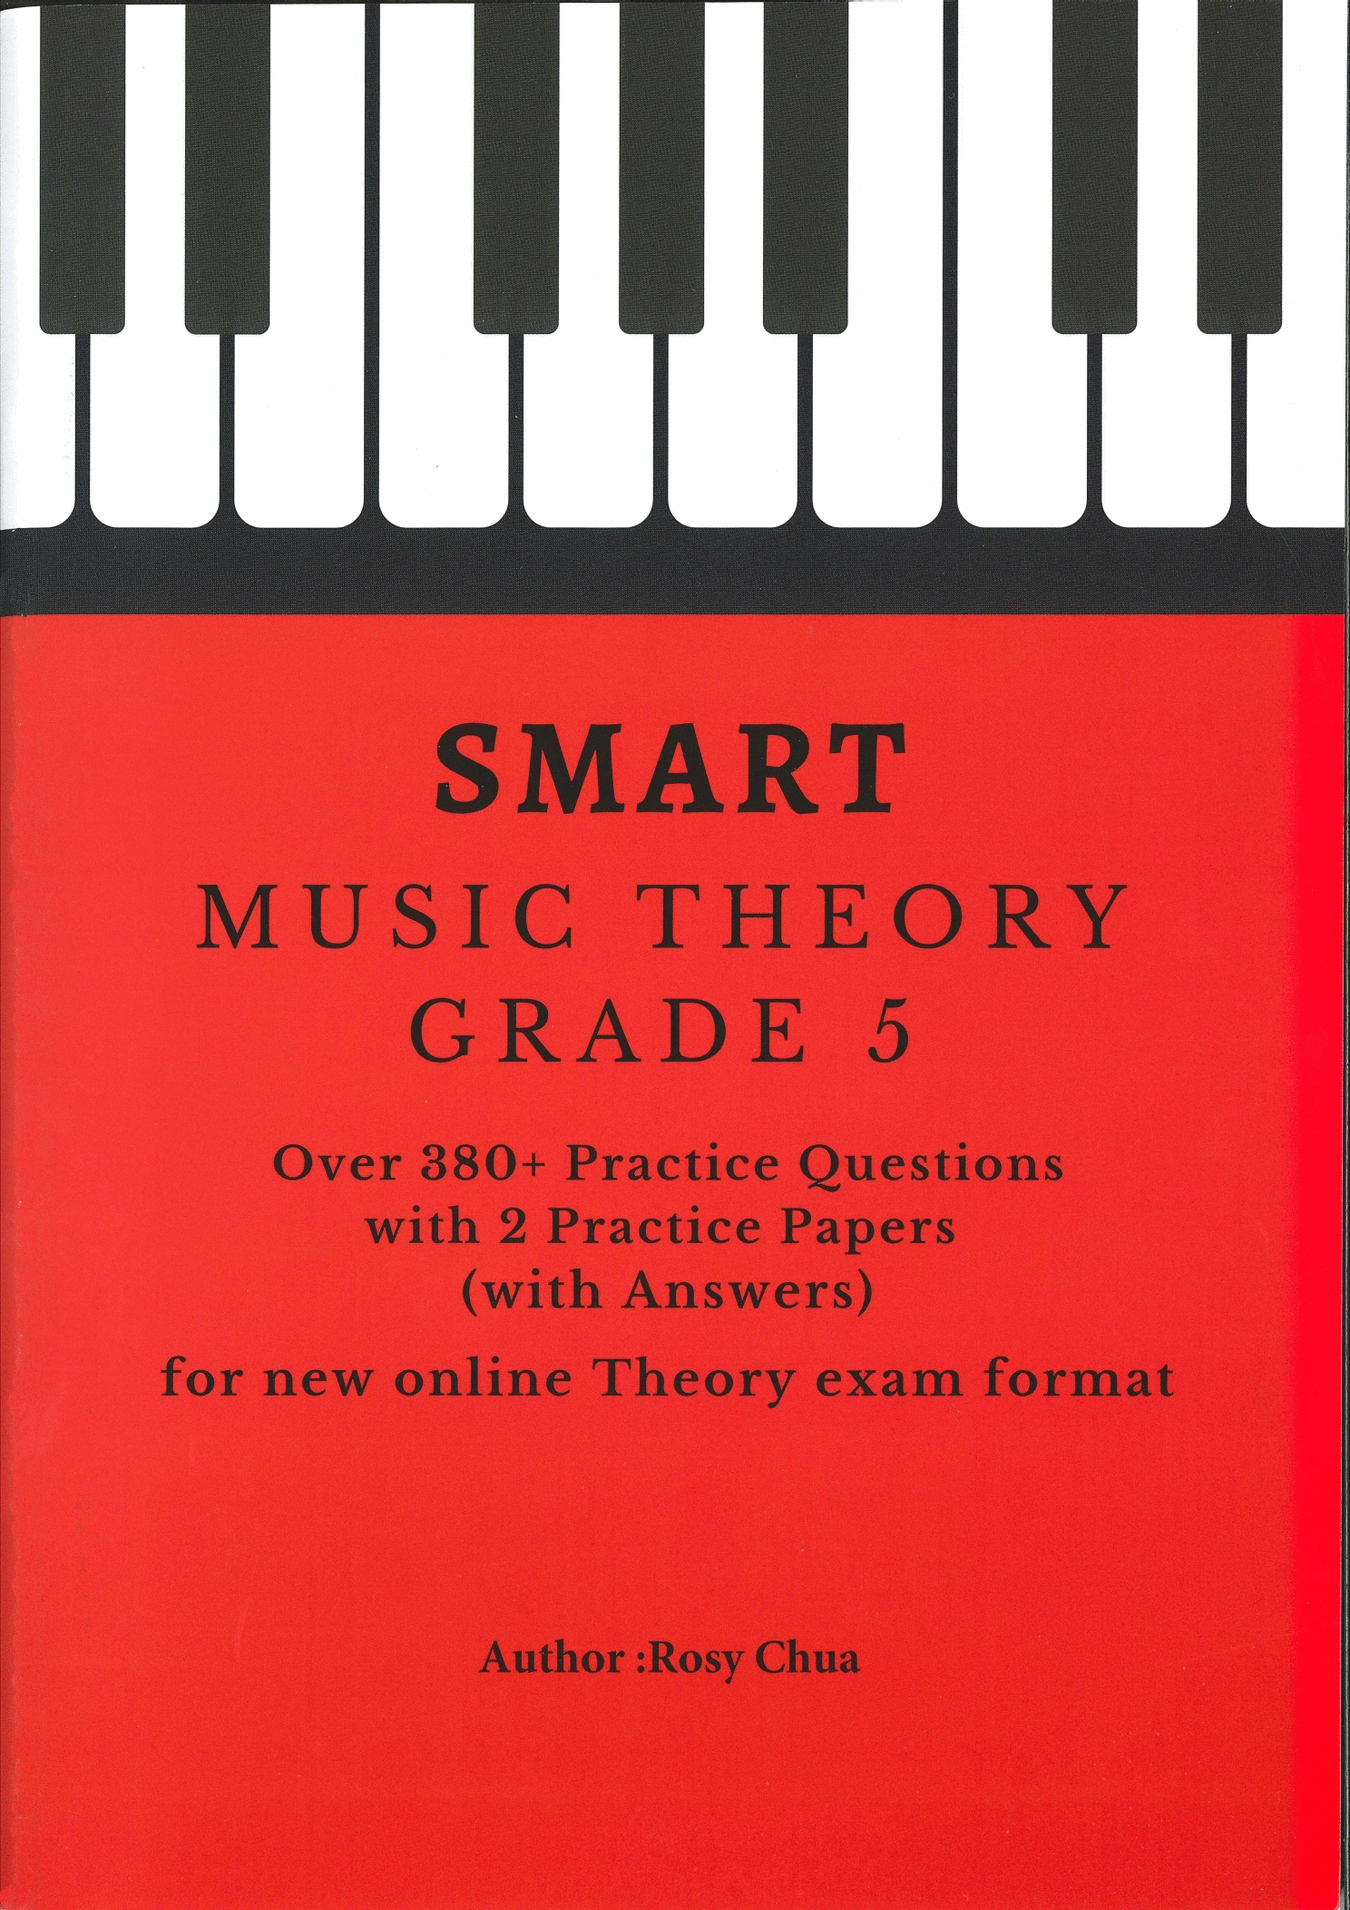 音樂考試與練習書籍